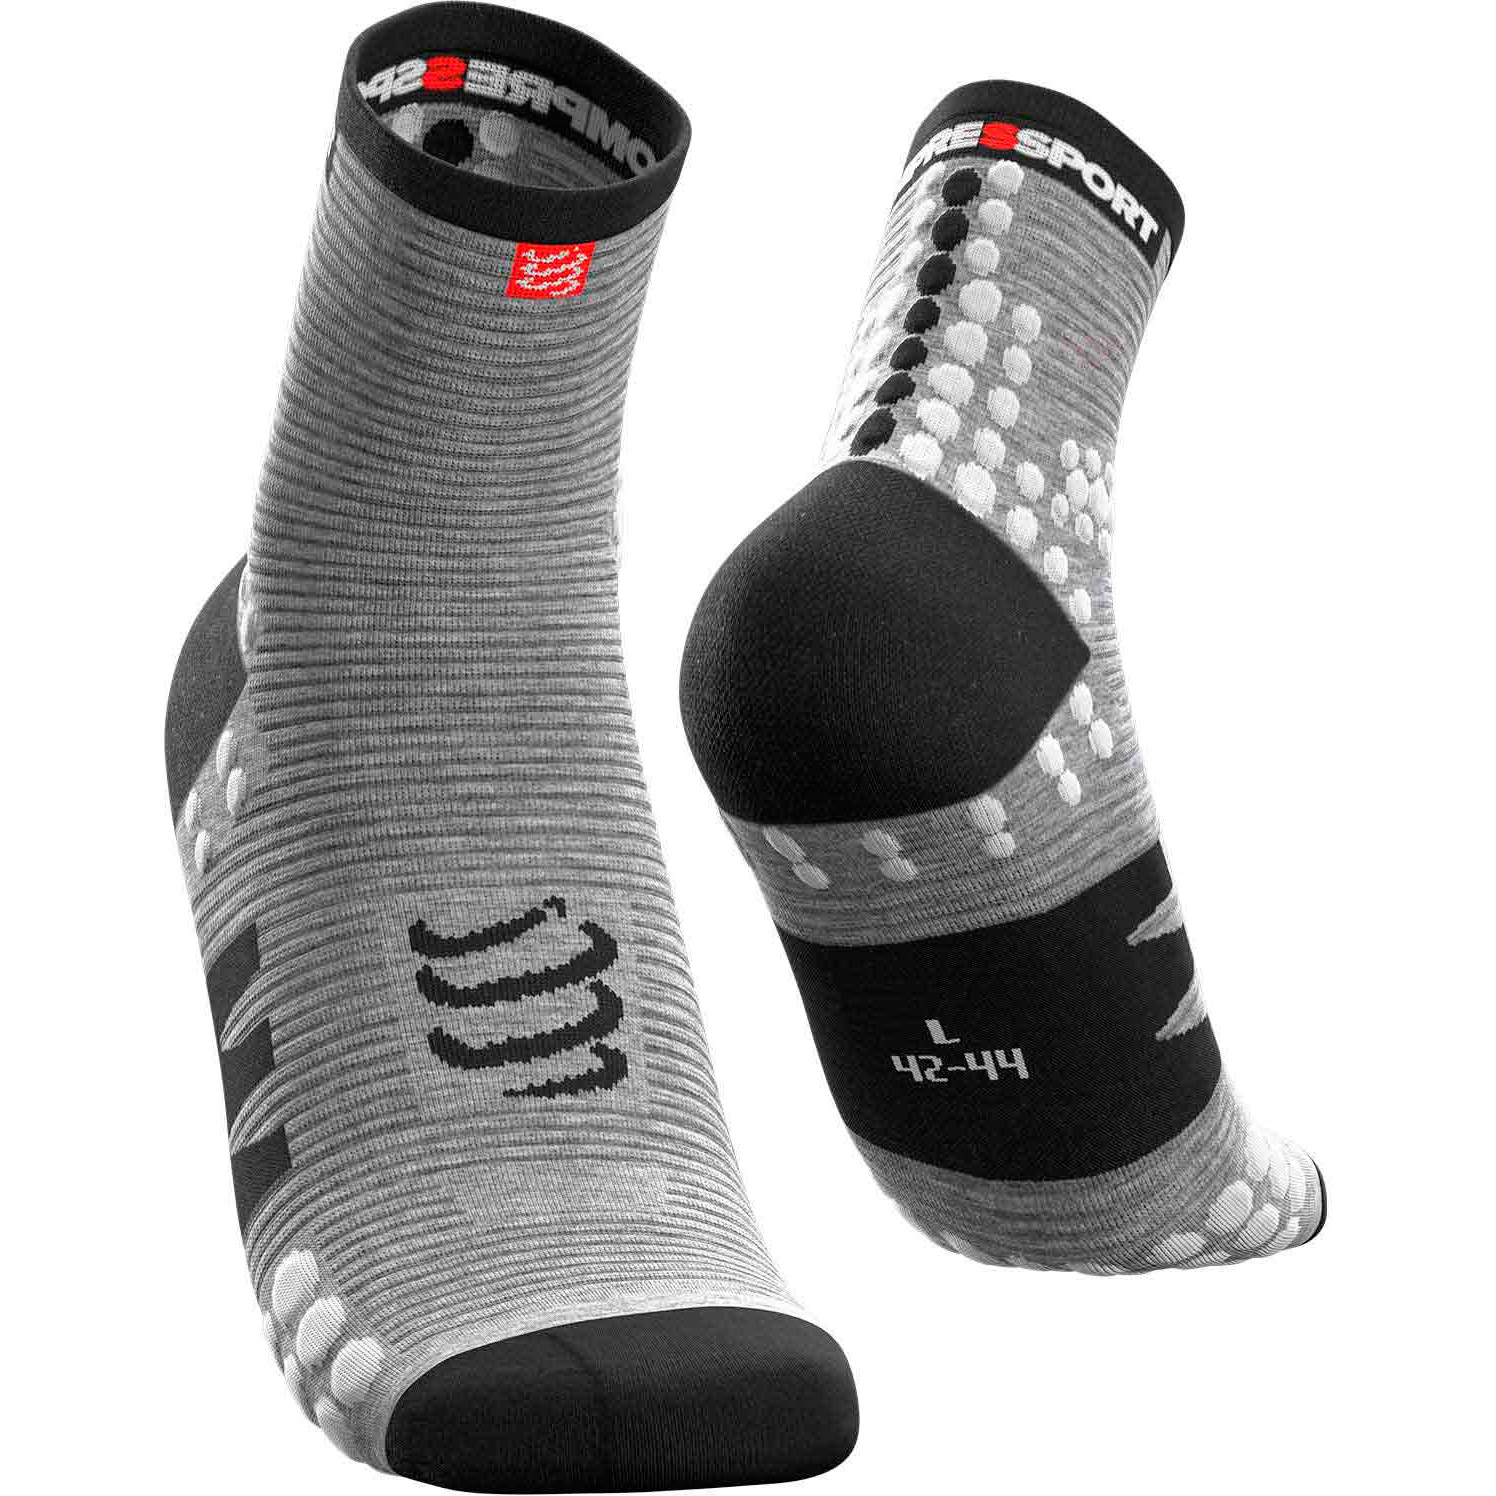 Носки компрессионные Compressport Pro Racing Socks V3.0. High